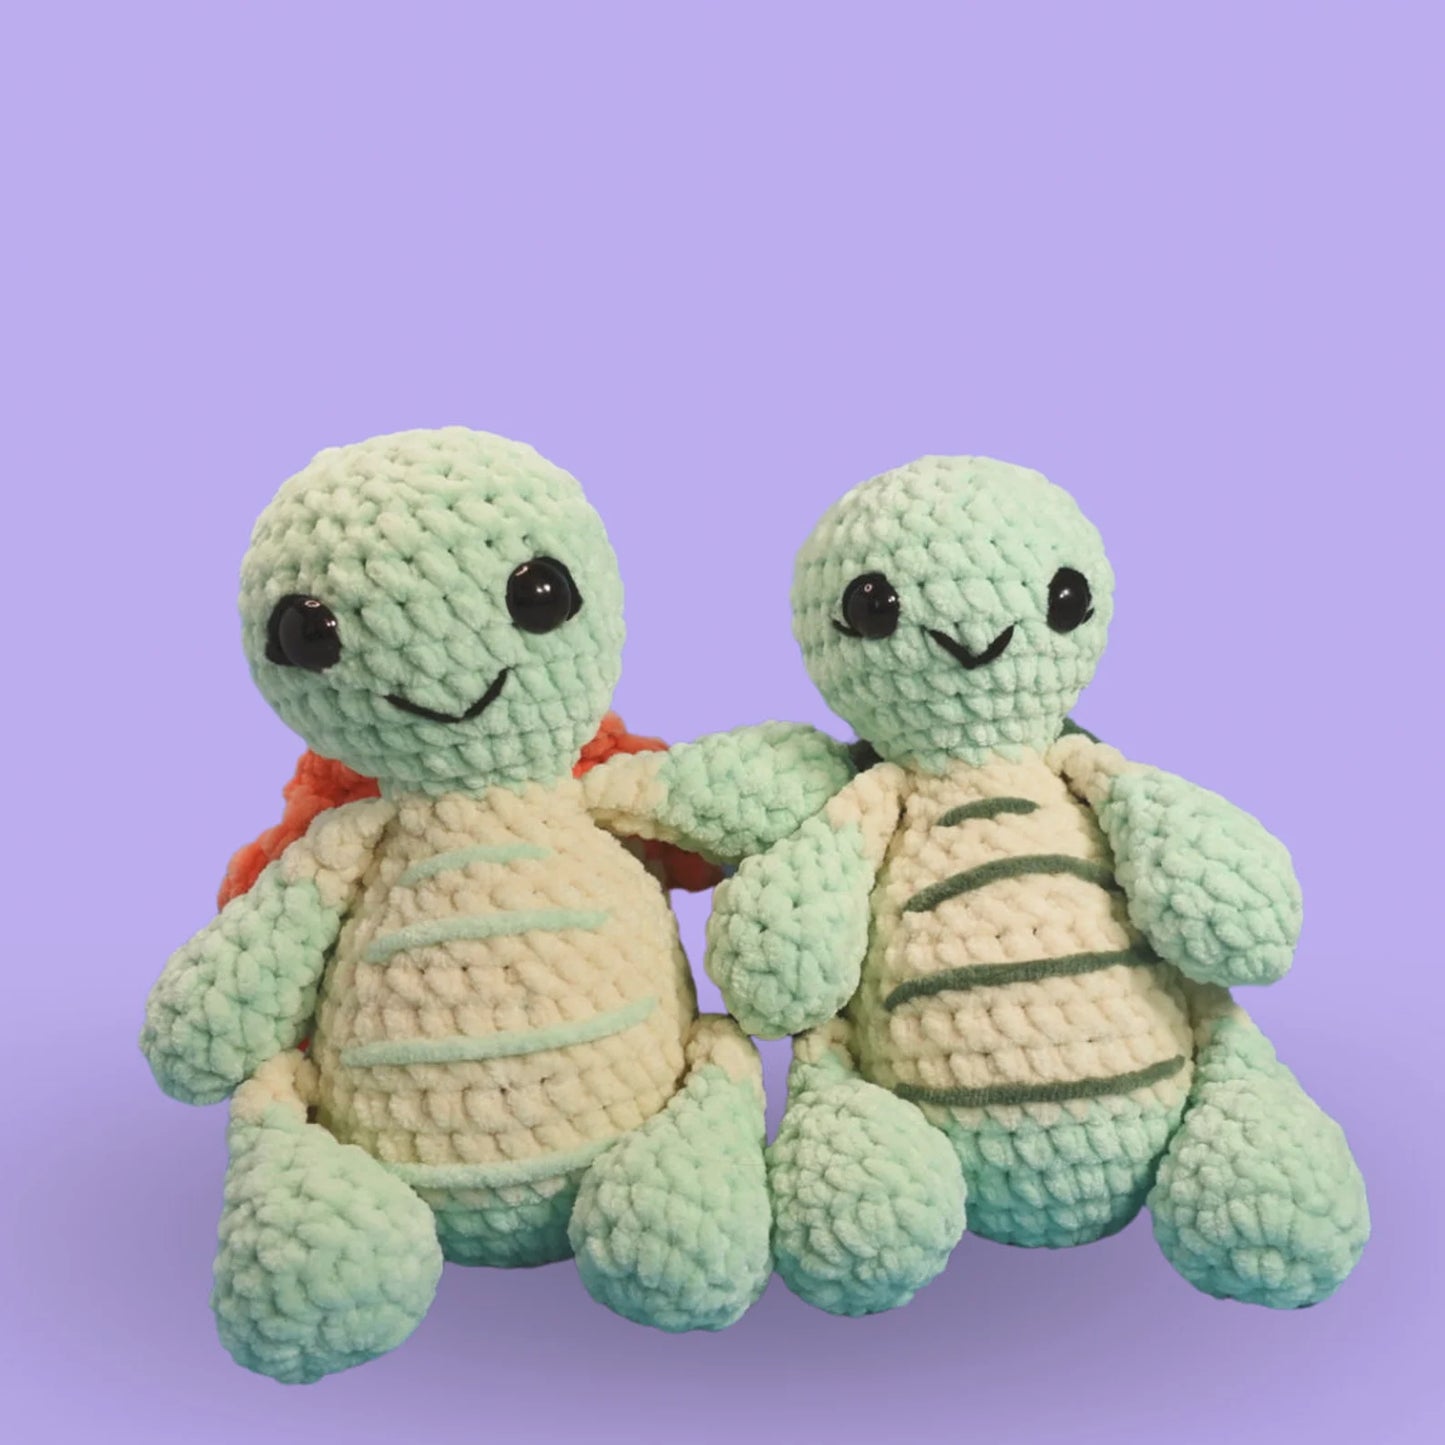 Turtle crochet pattern